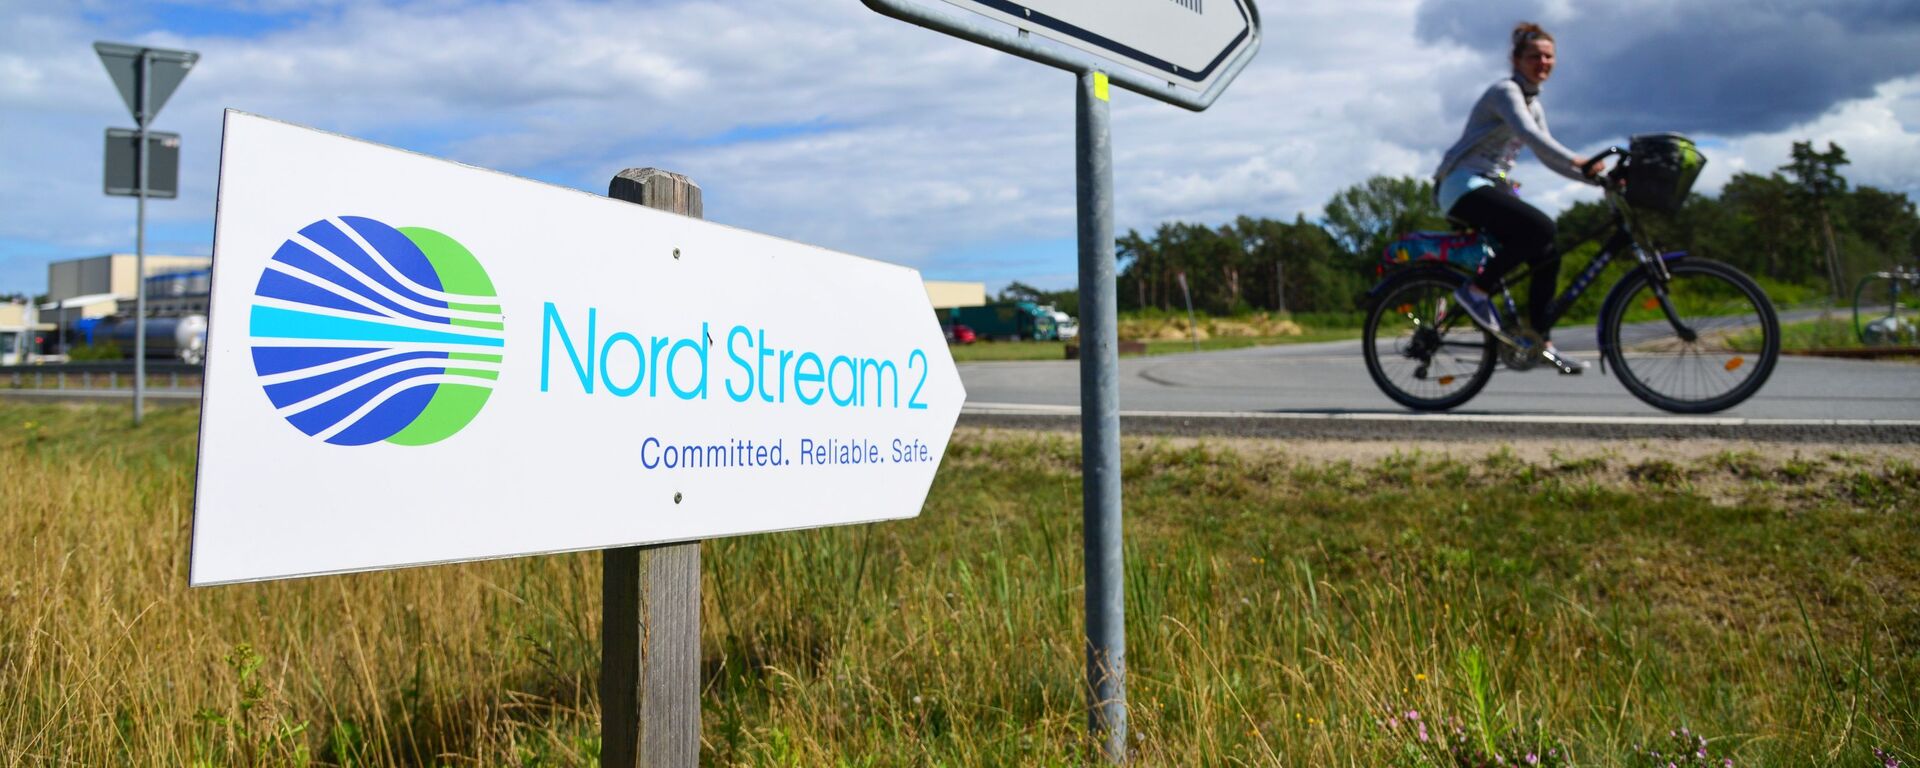 Una señal de Nord Stream 2 en Alemania - Sputnik Mundo, 1920, 21.07.2021